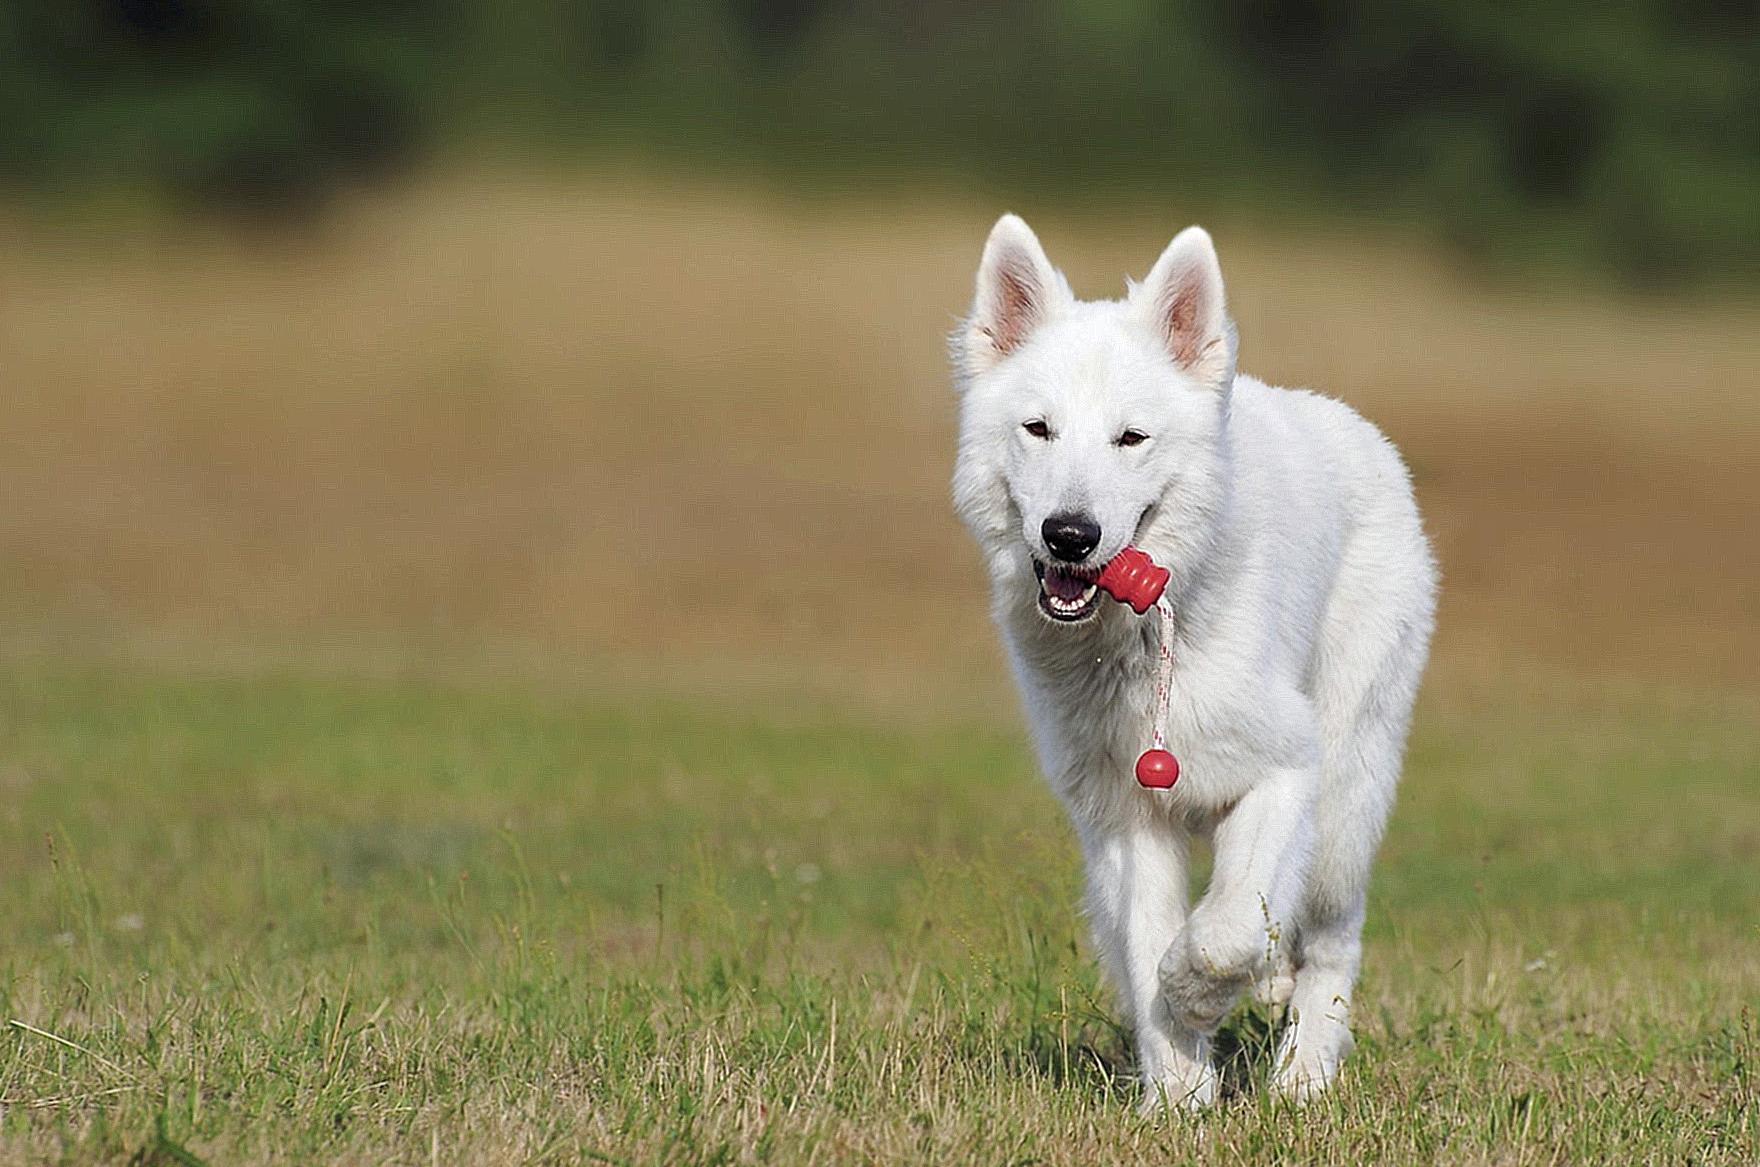 White Dog Running over Green Grass